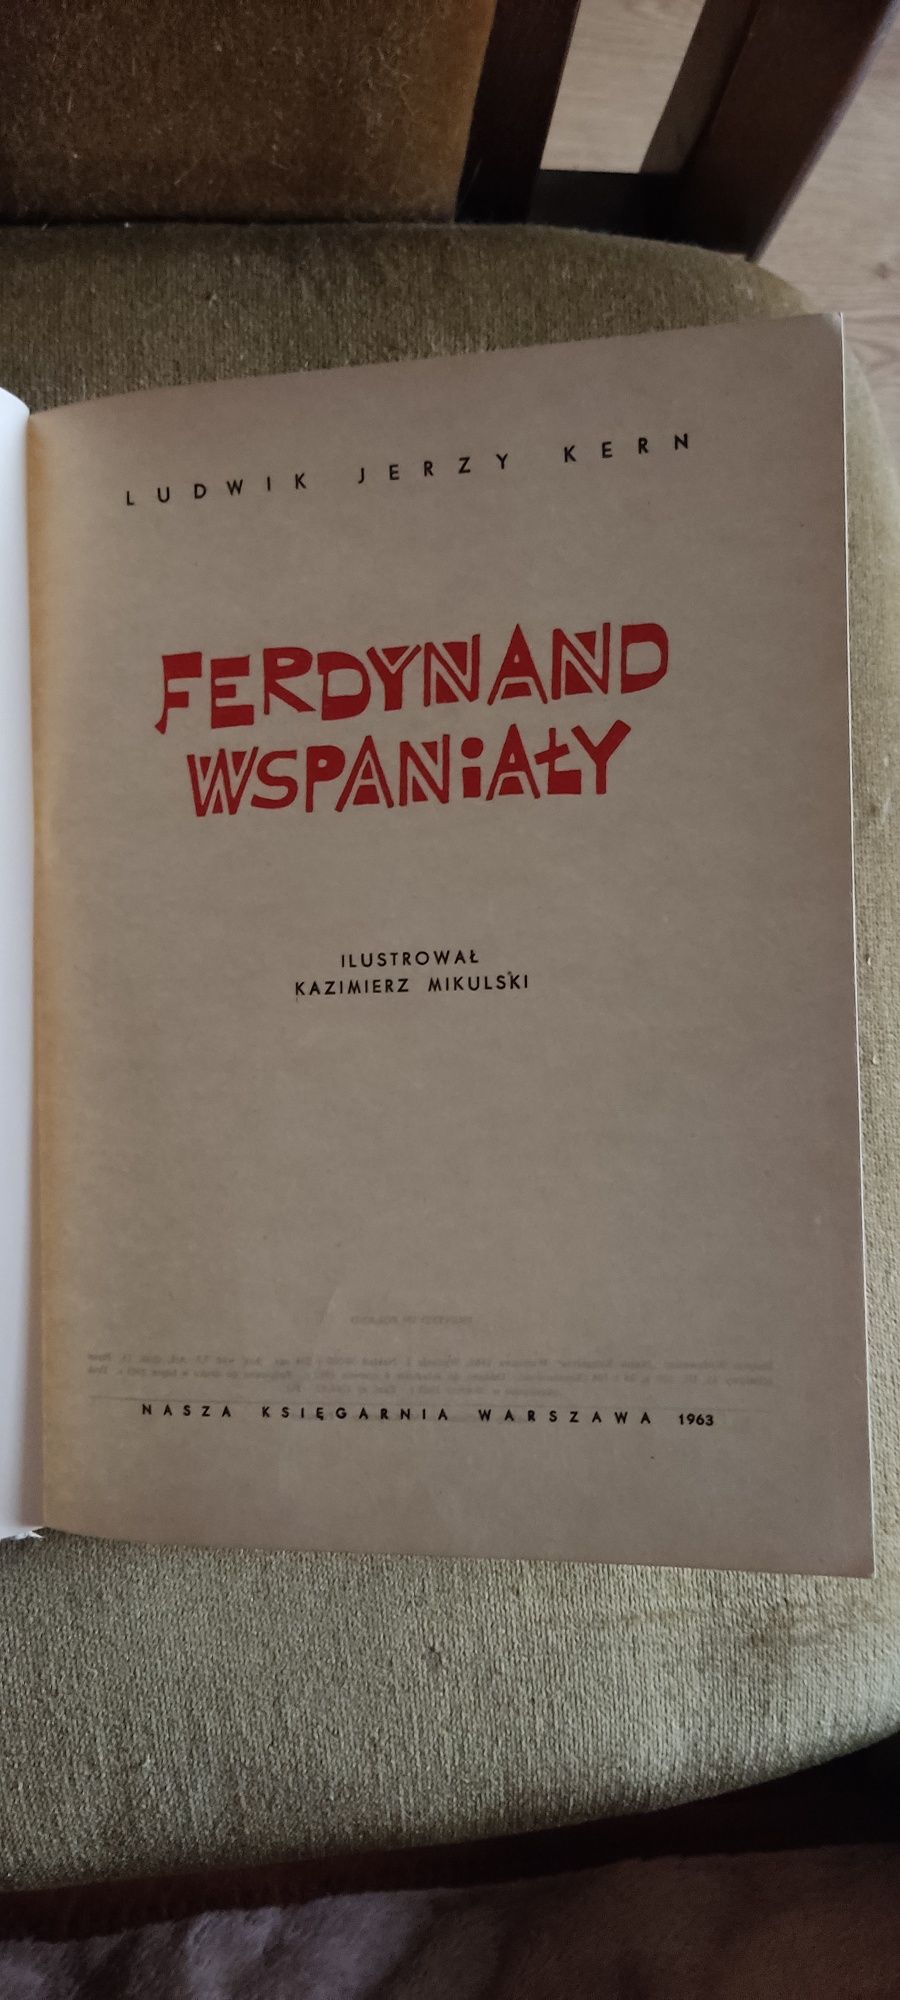 Ferdynand Wspaniały - Ludwik Jerzy Kern - I wydanie - 1963 rok